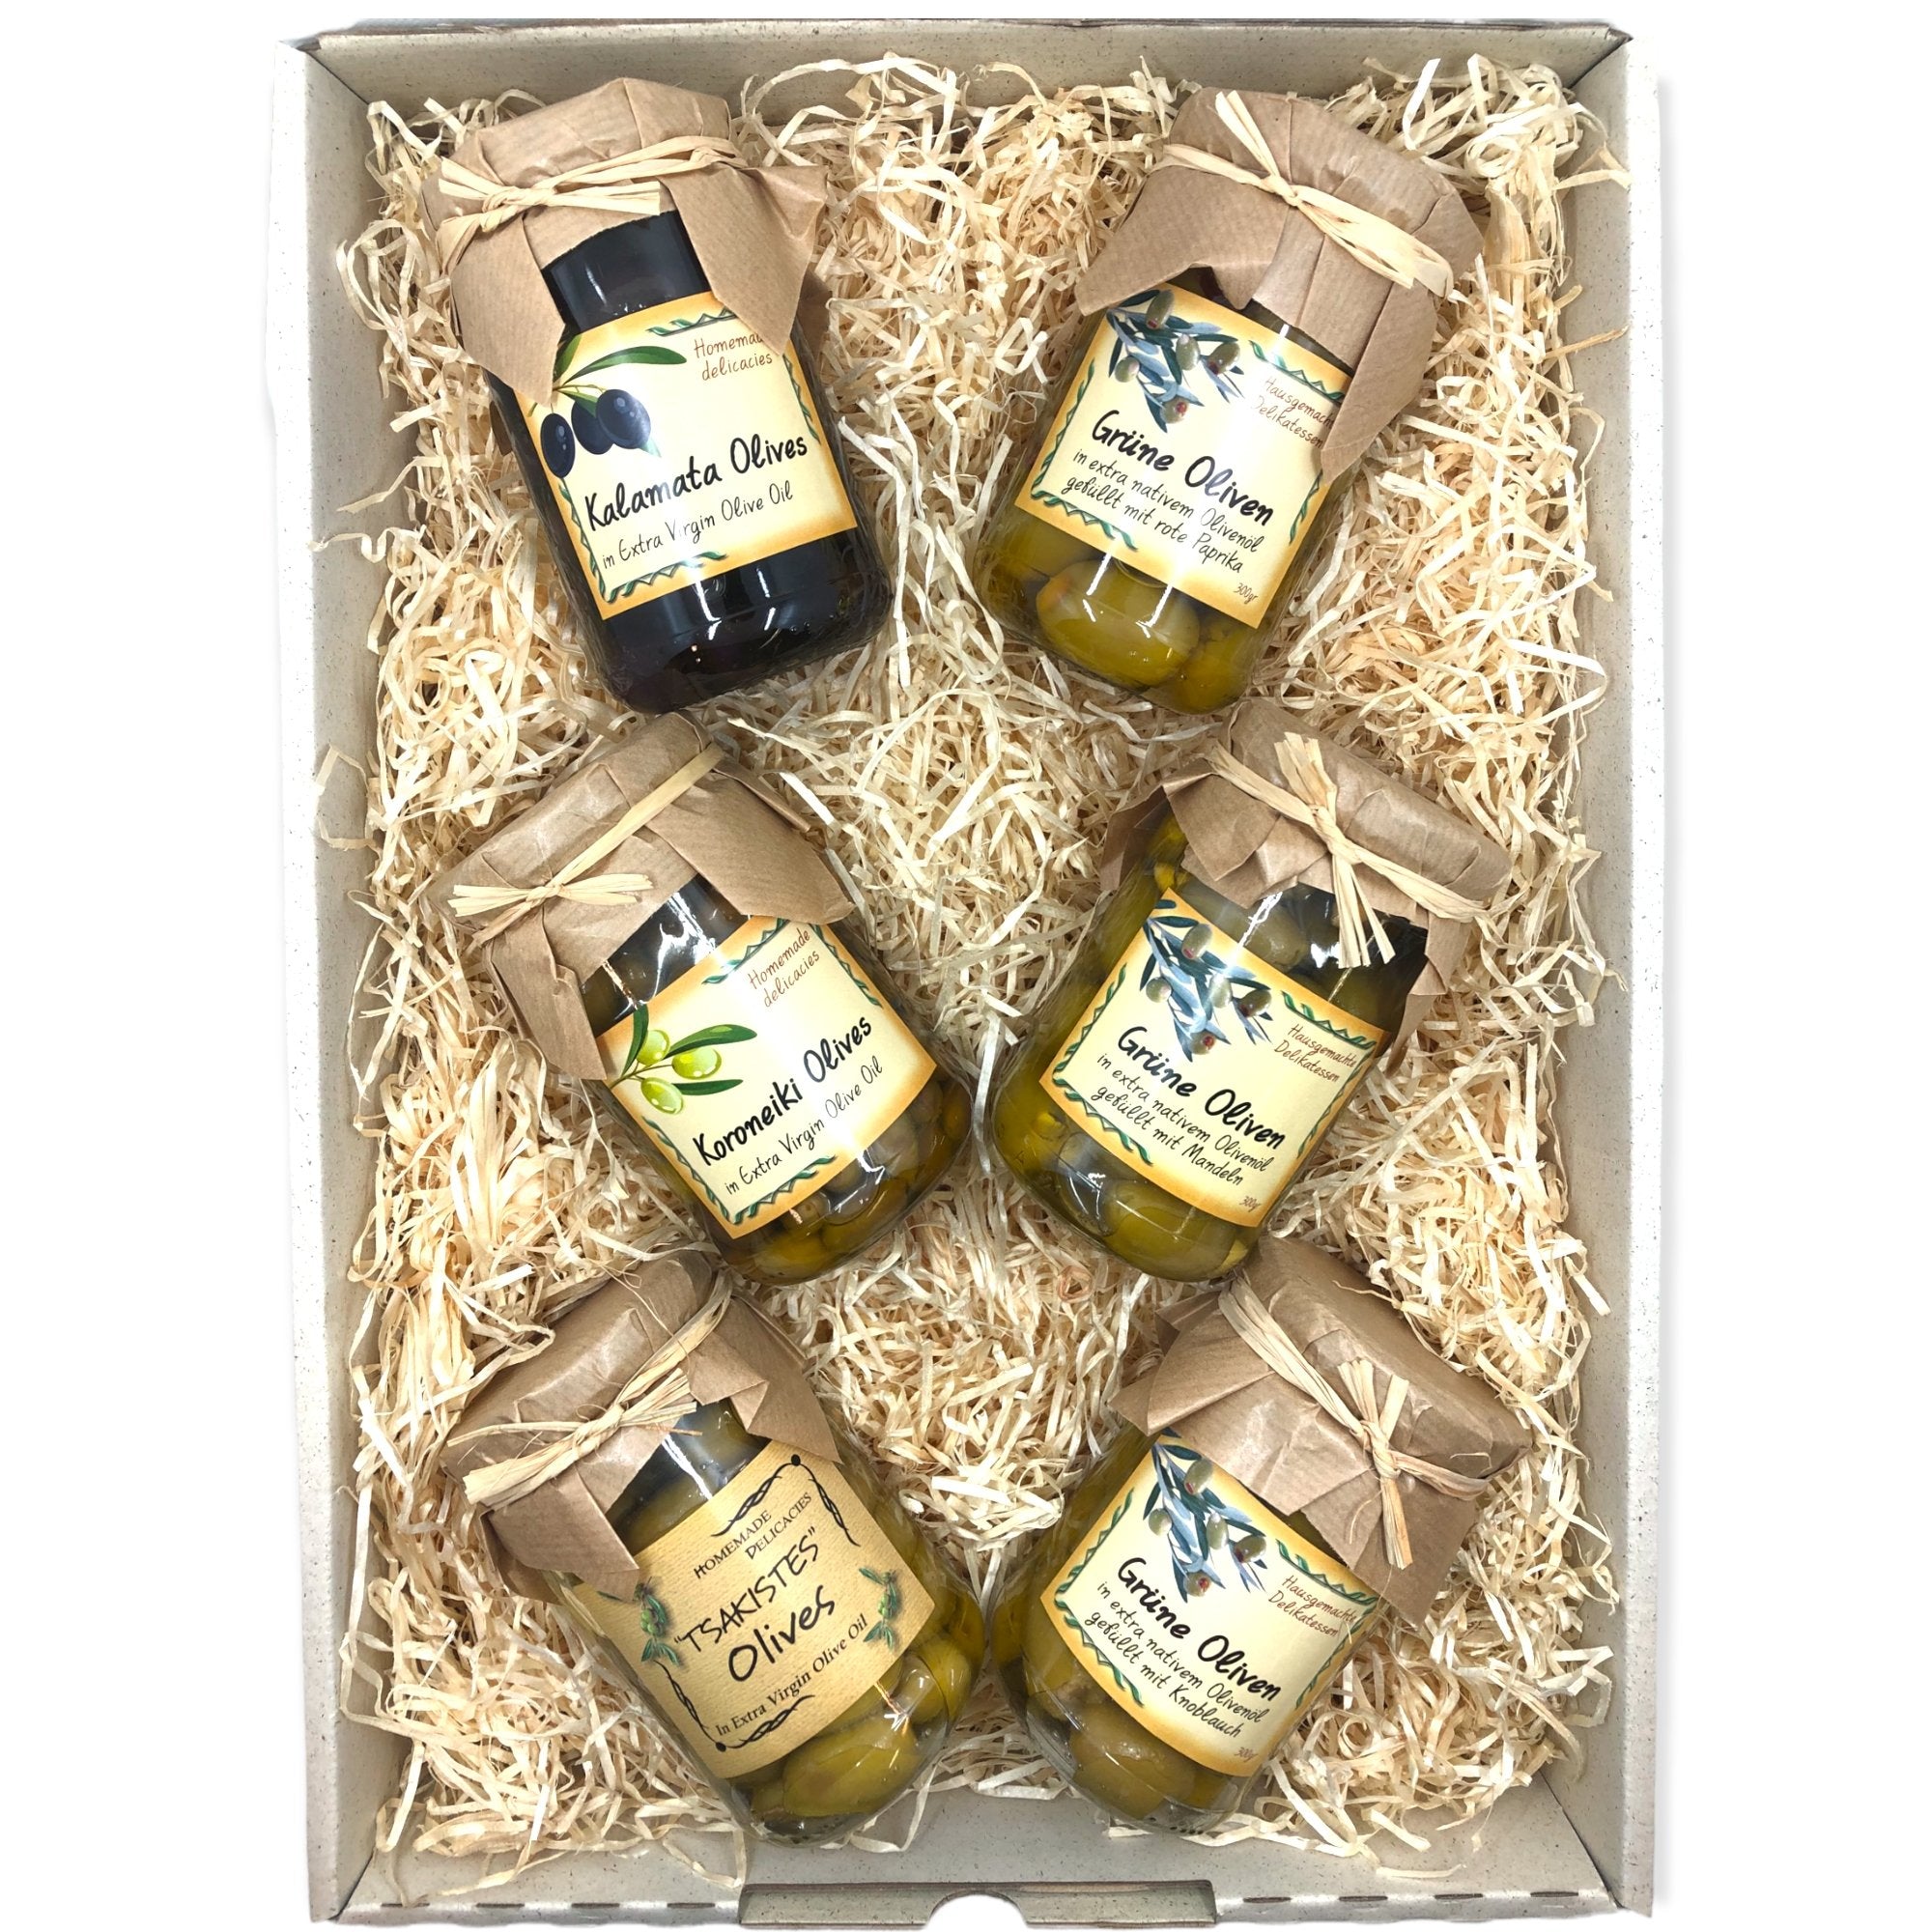 OlivenZauber Geschenkset “Griechische Oliven” - OlivenZauber - Olivenöl neu erleben